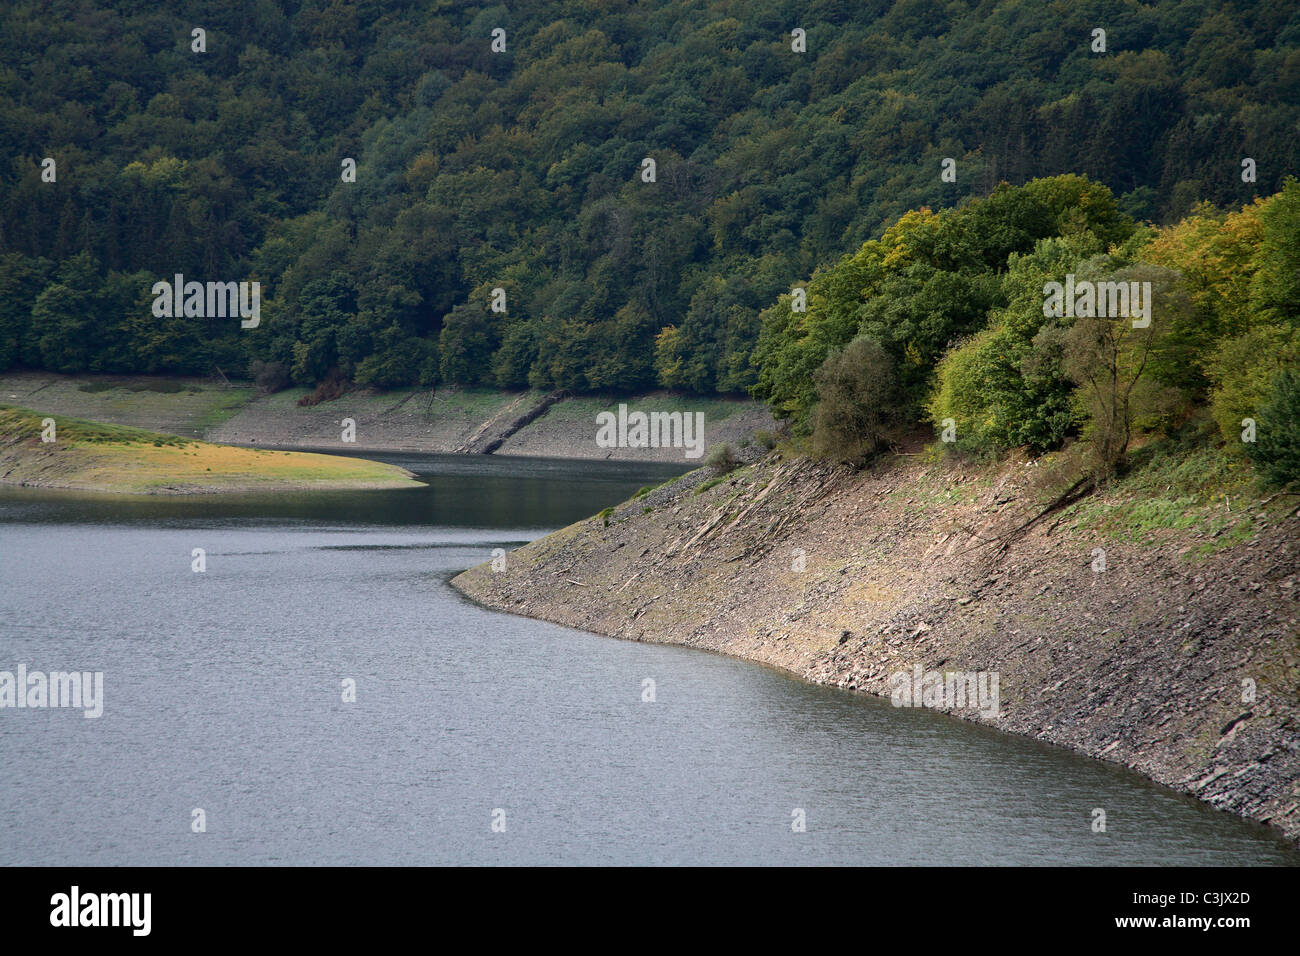 Urfstausee im Oktober bei Niedrigwasser, Urf Reservoir, autumn, low water Stock Photo